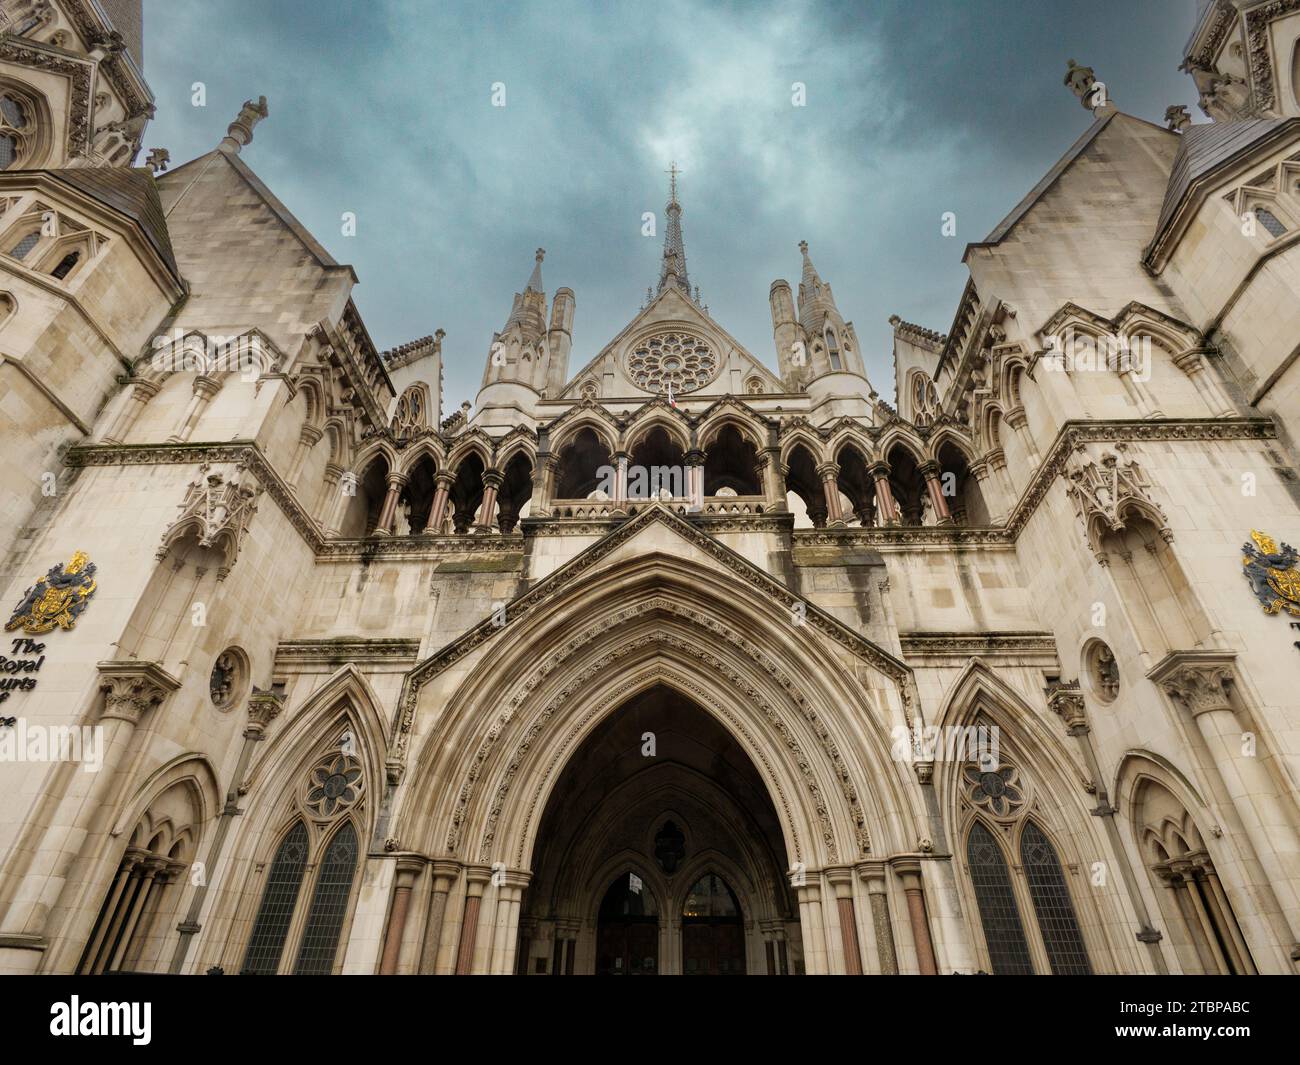 Les cours royales de justice ou cours de justice qui abritent la haute Cour, Westminster, Londres, Royaume-Uni Banque D'Images